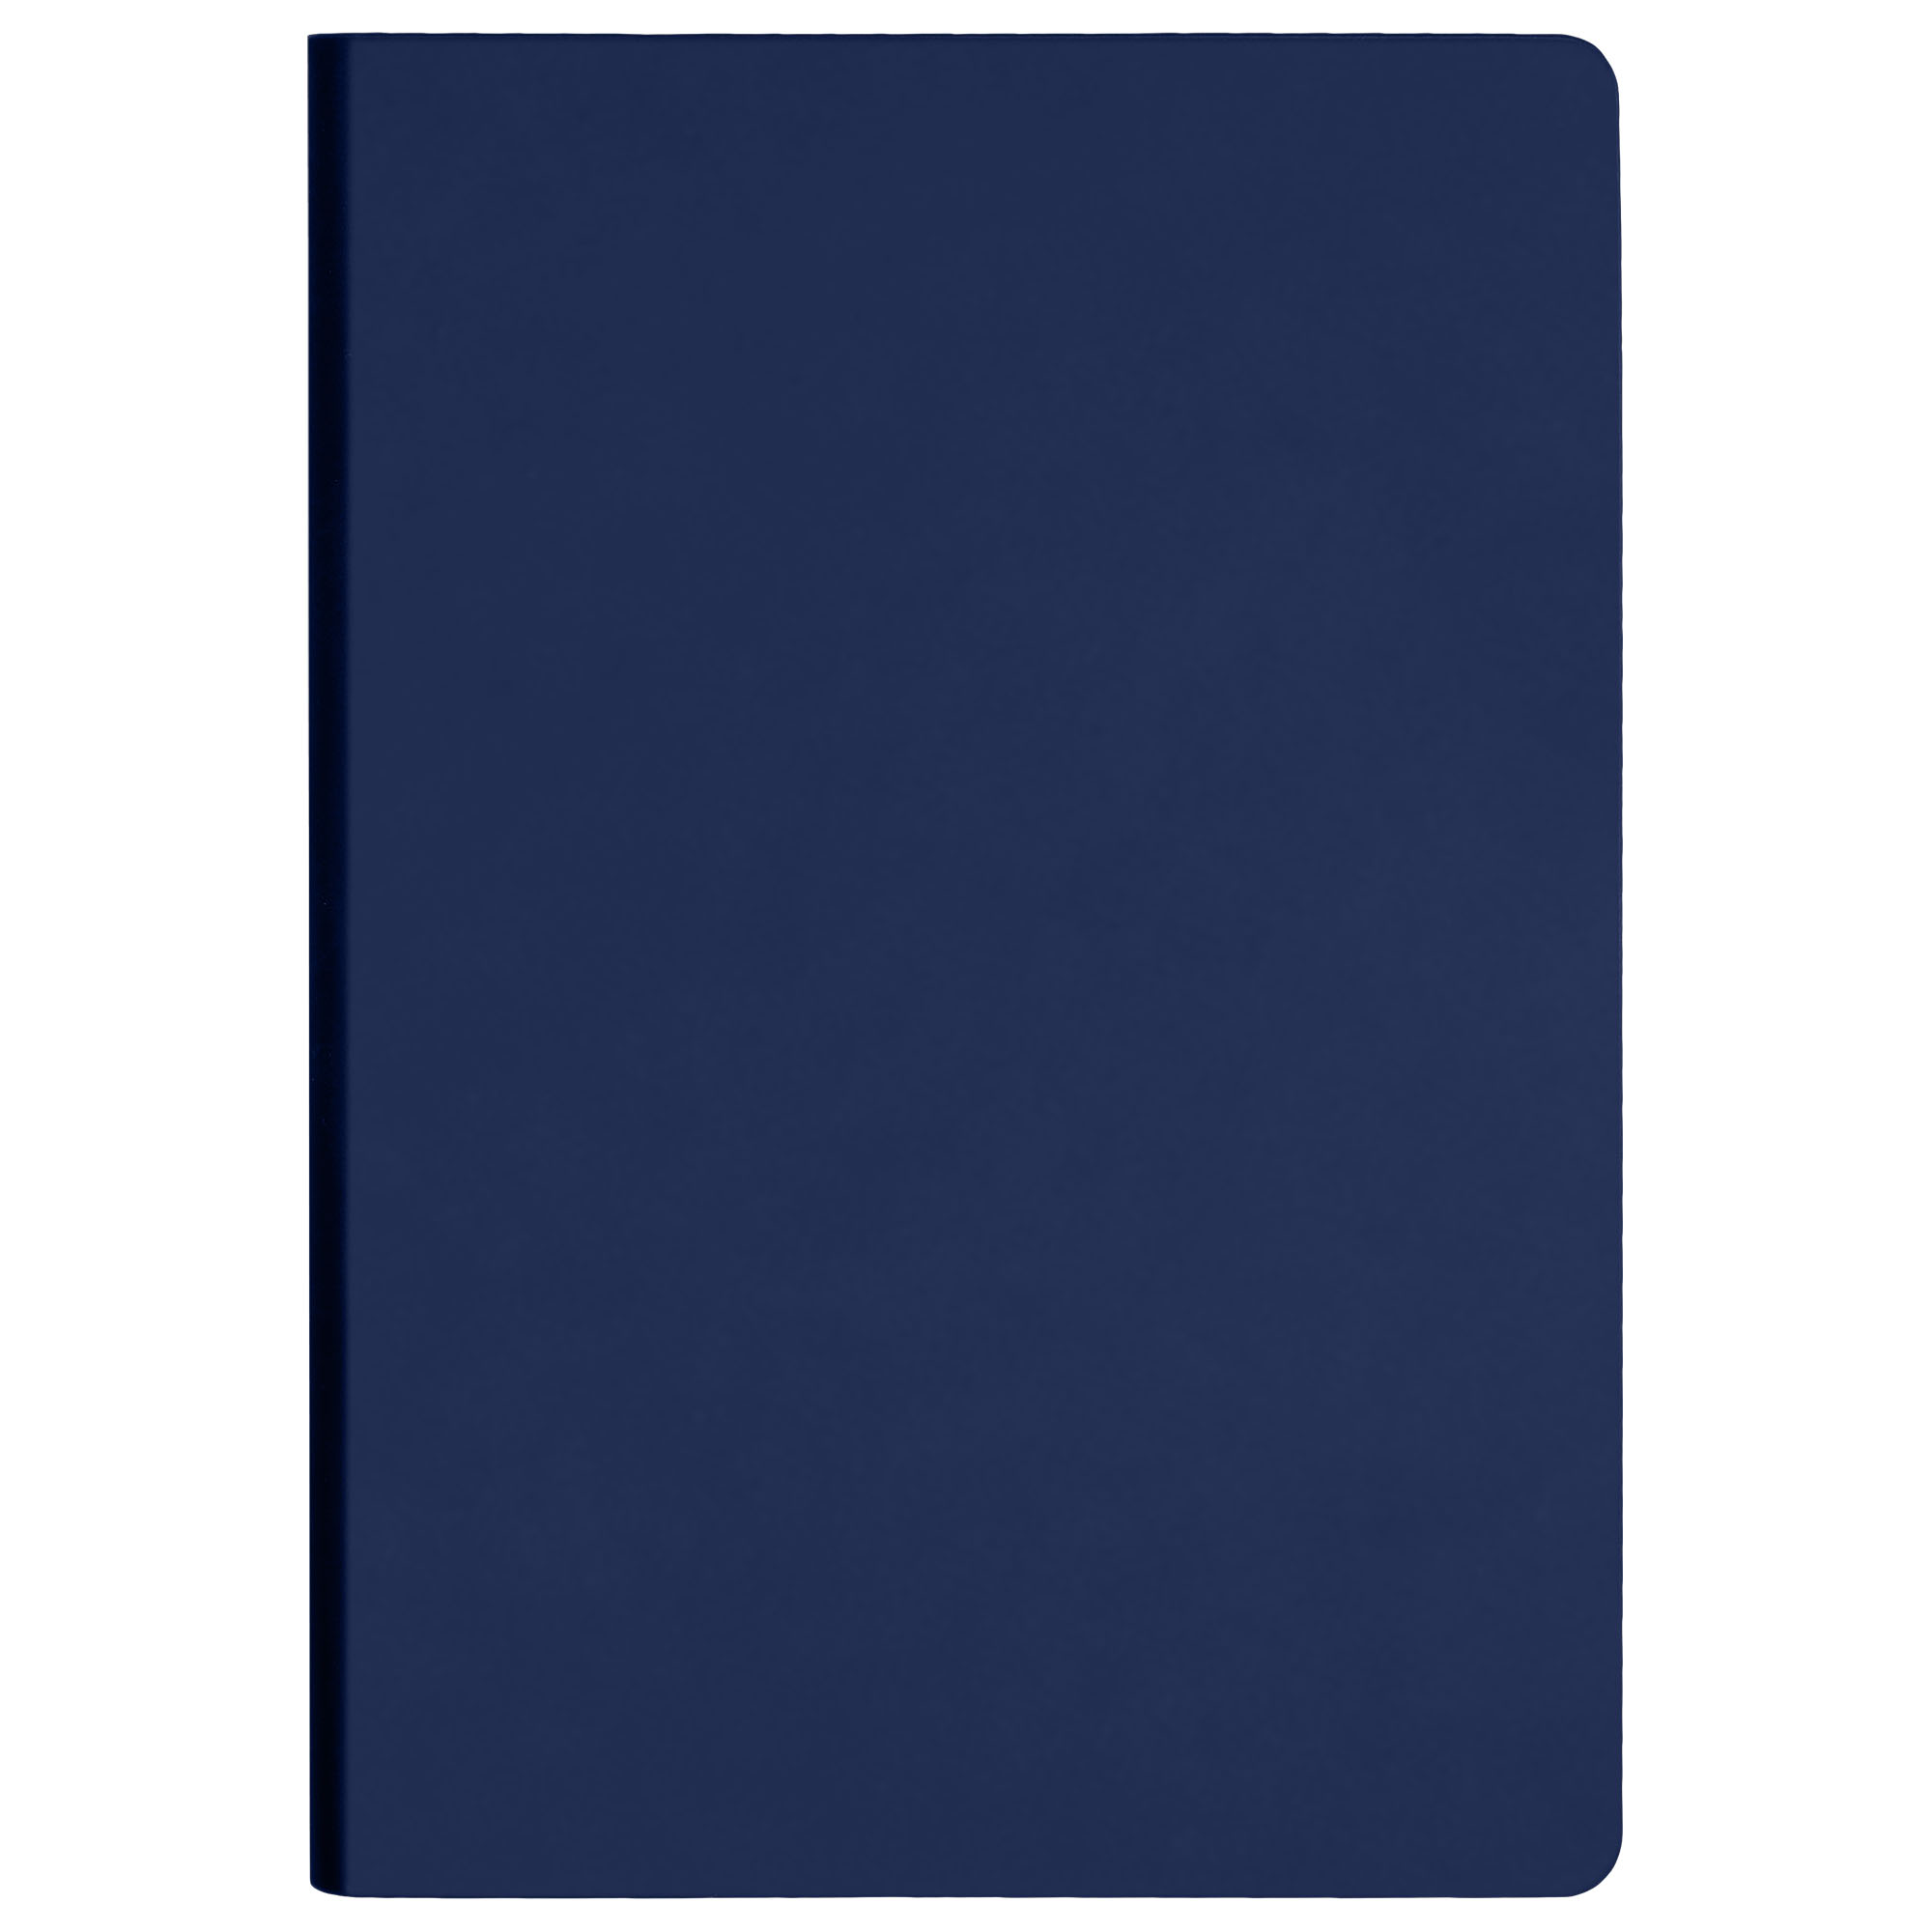 Ежедневник Portobello Trend, Spark, недатированный, синий (без упаковки, без стикера, с черной подложкой, без прокраса уреза)